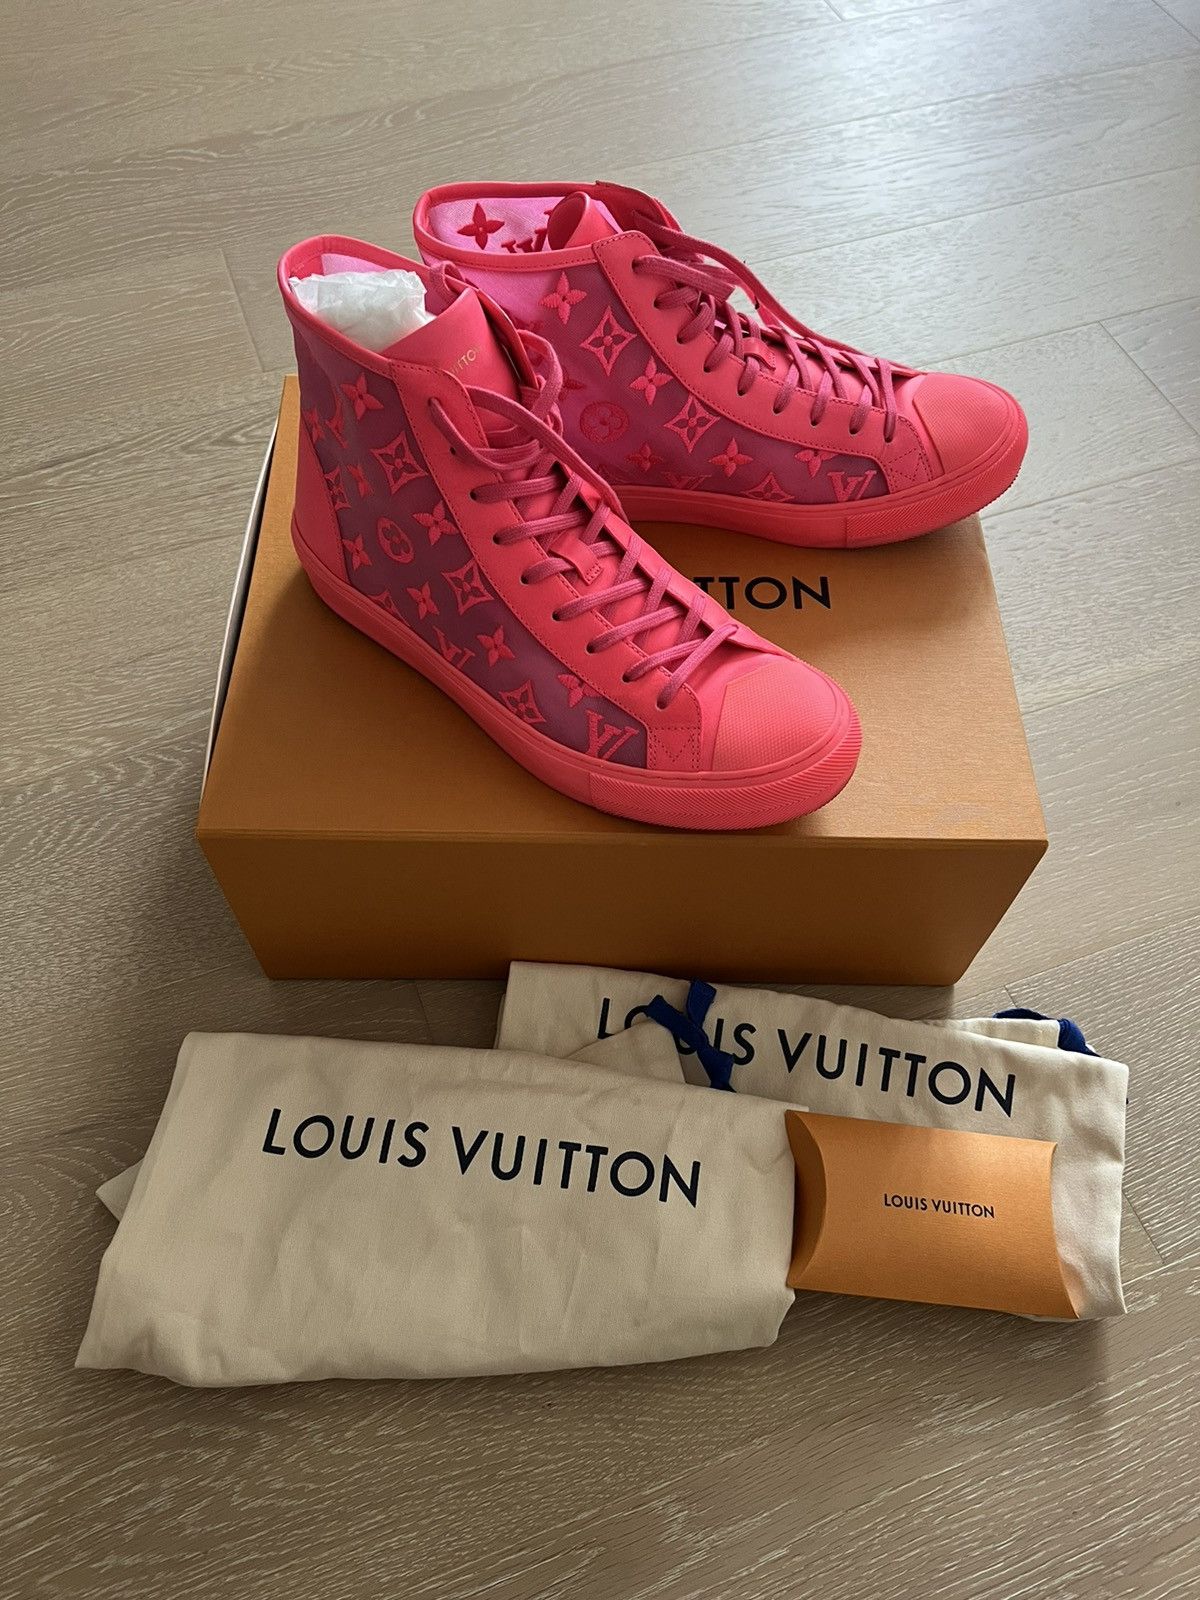 Louis Vuitton Men's Virgil Abloh Tattoo High Top Sneaker